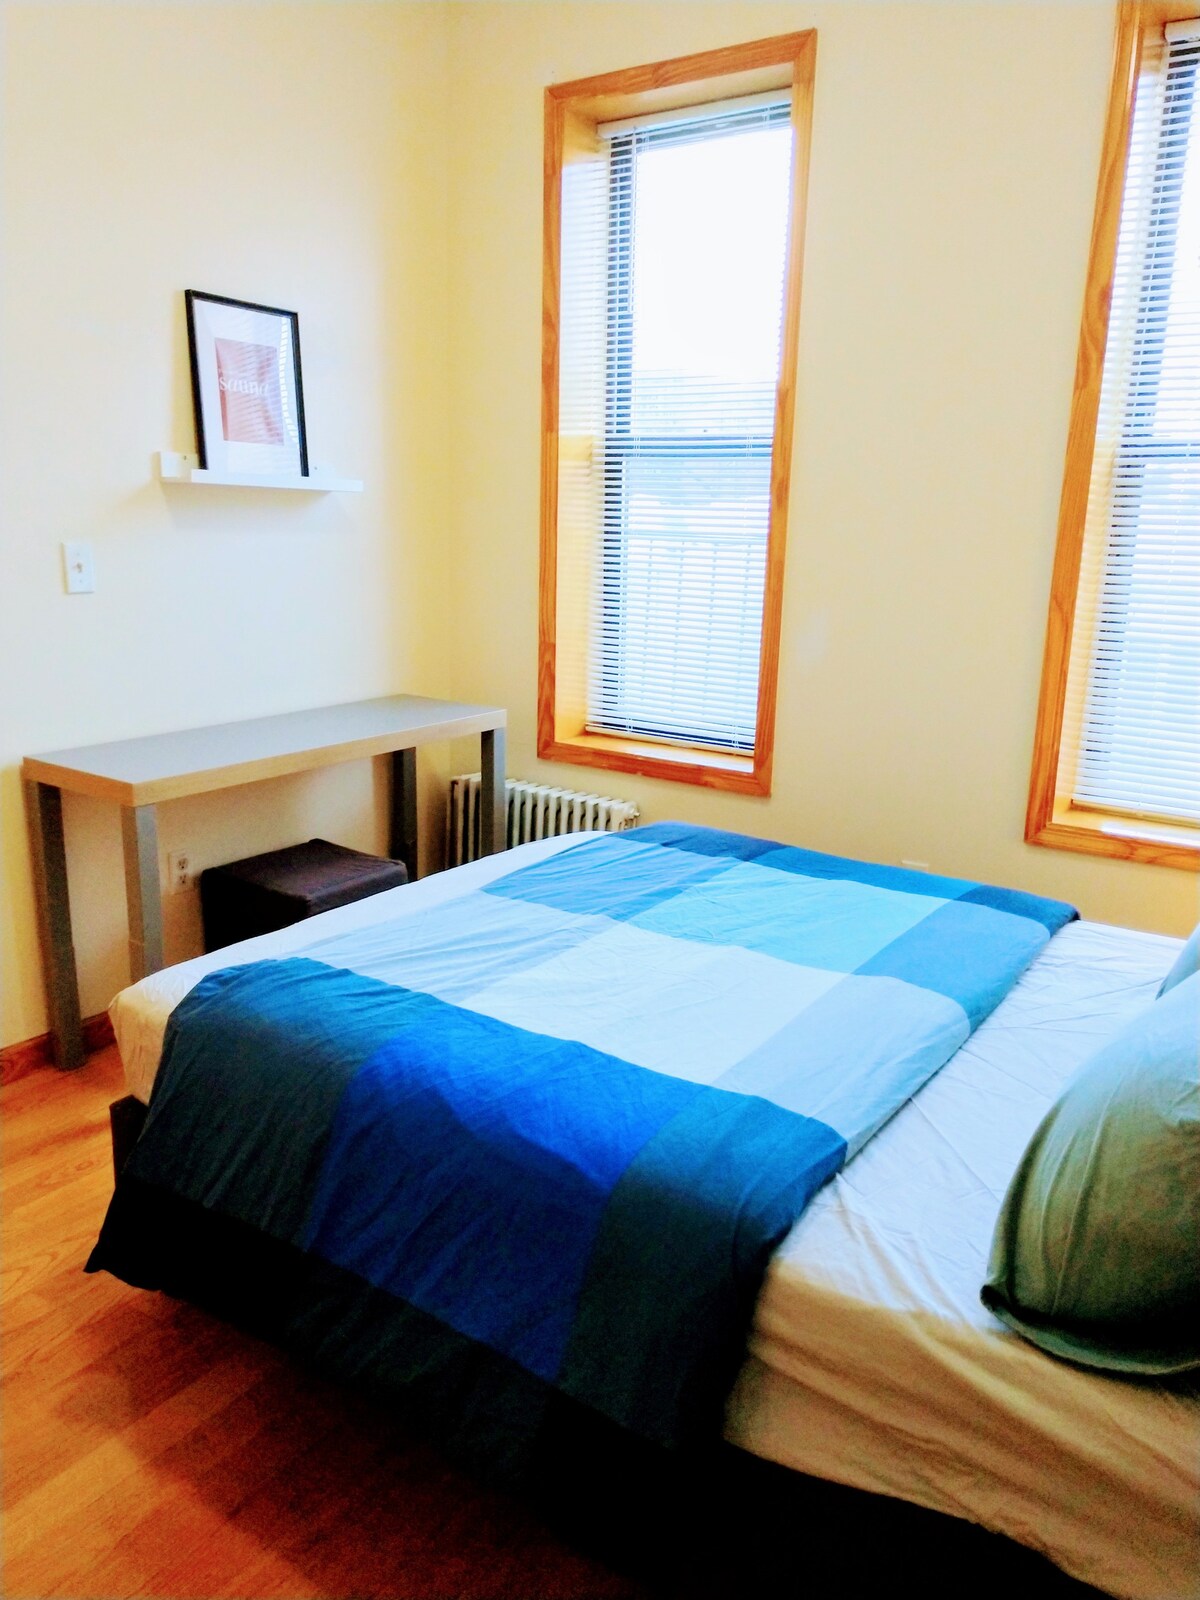 阳光充足、方便、安全安静的3卧室公寓